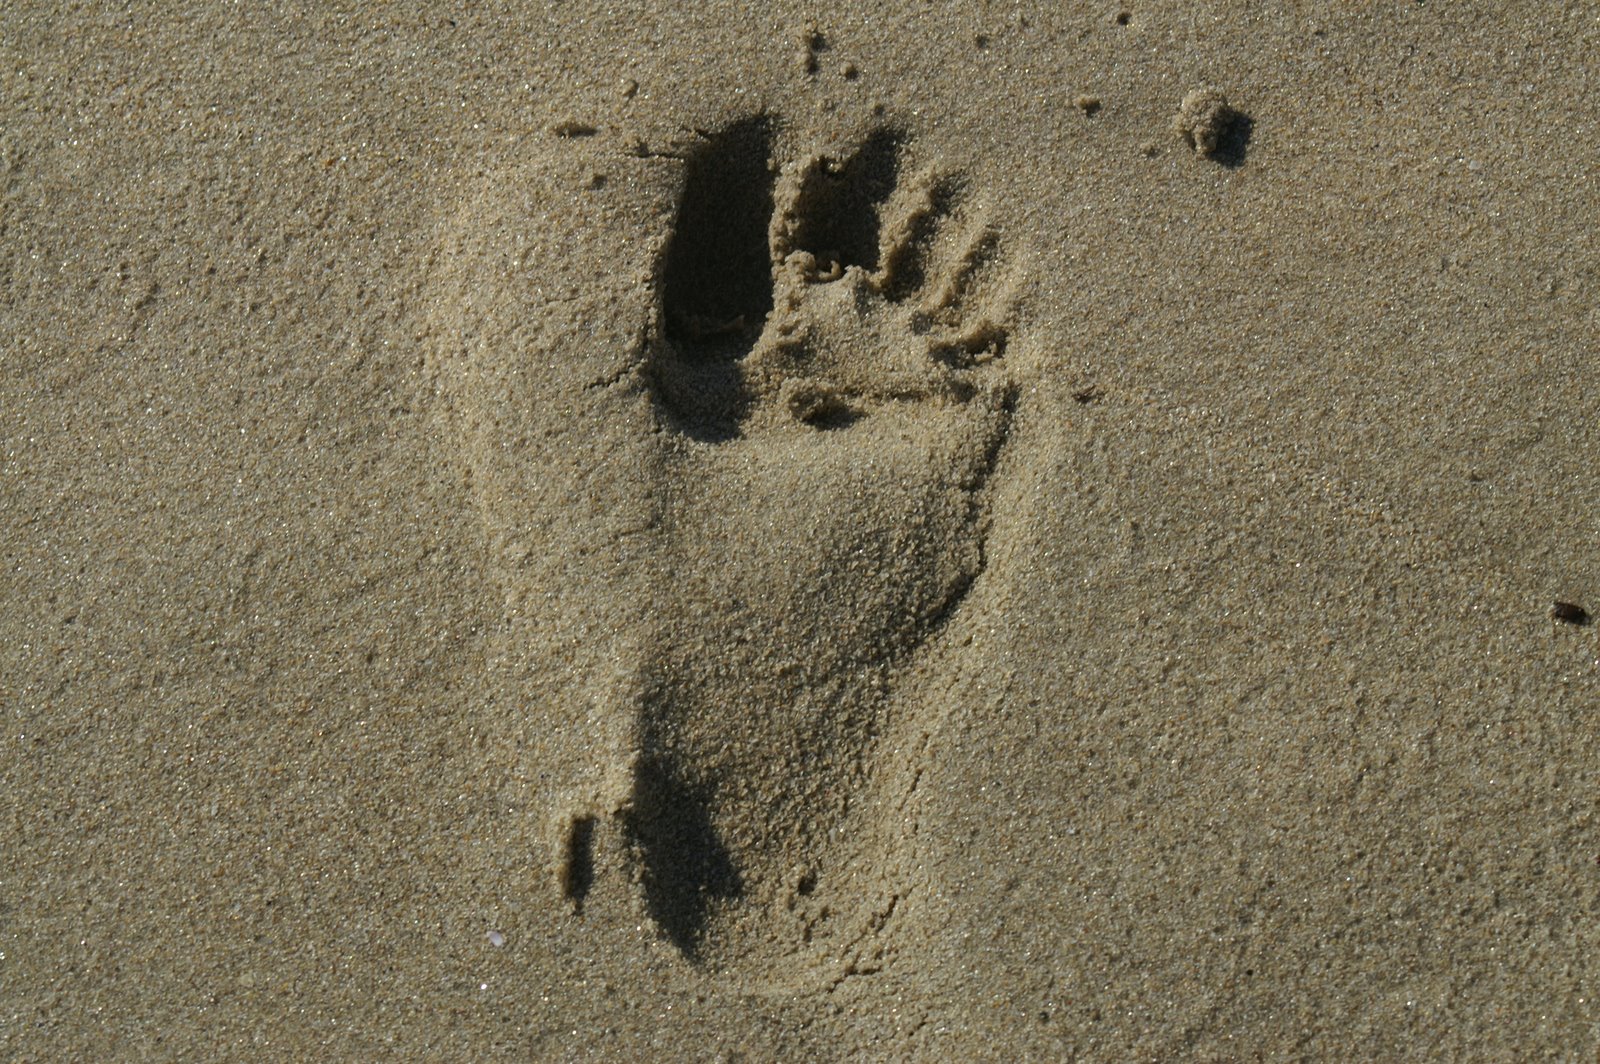 [Footprint.JPG]